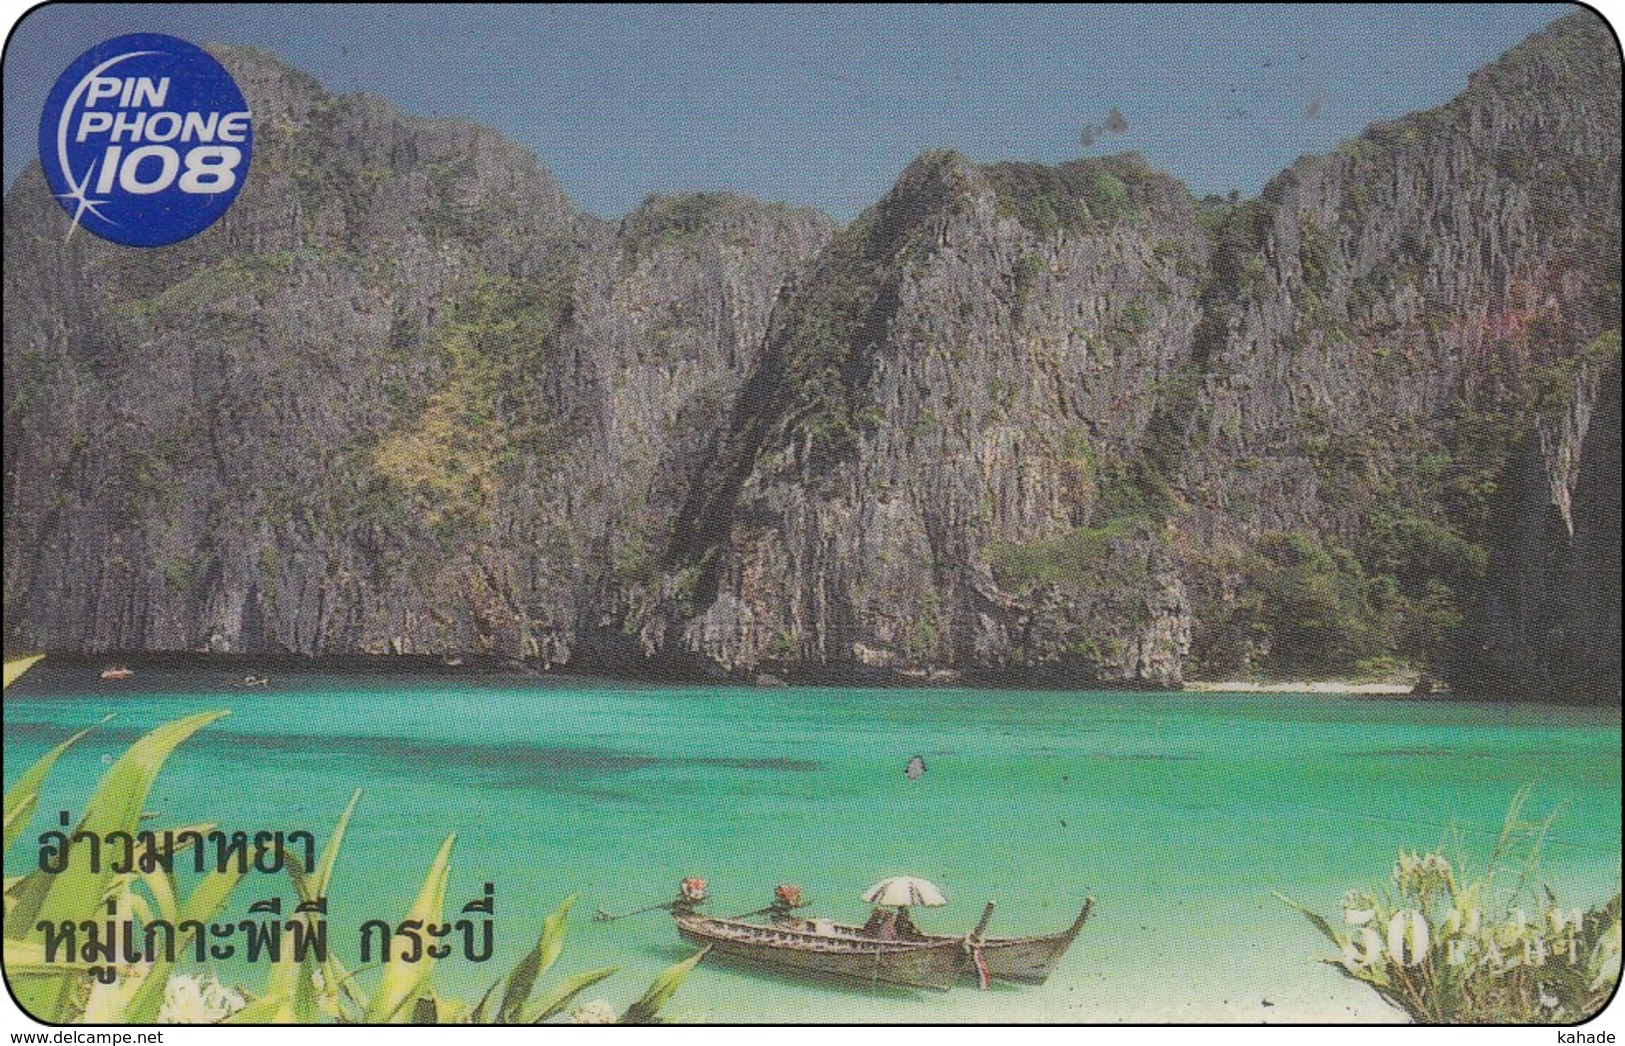 Thailand Pin Phone 108 Phonecard   Eiland Insel - Thaïland